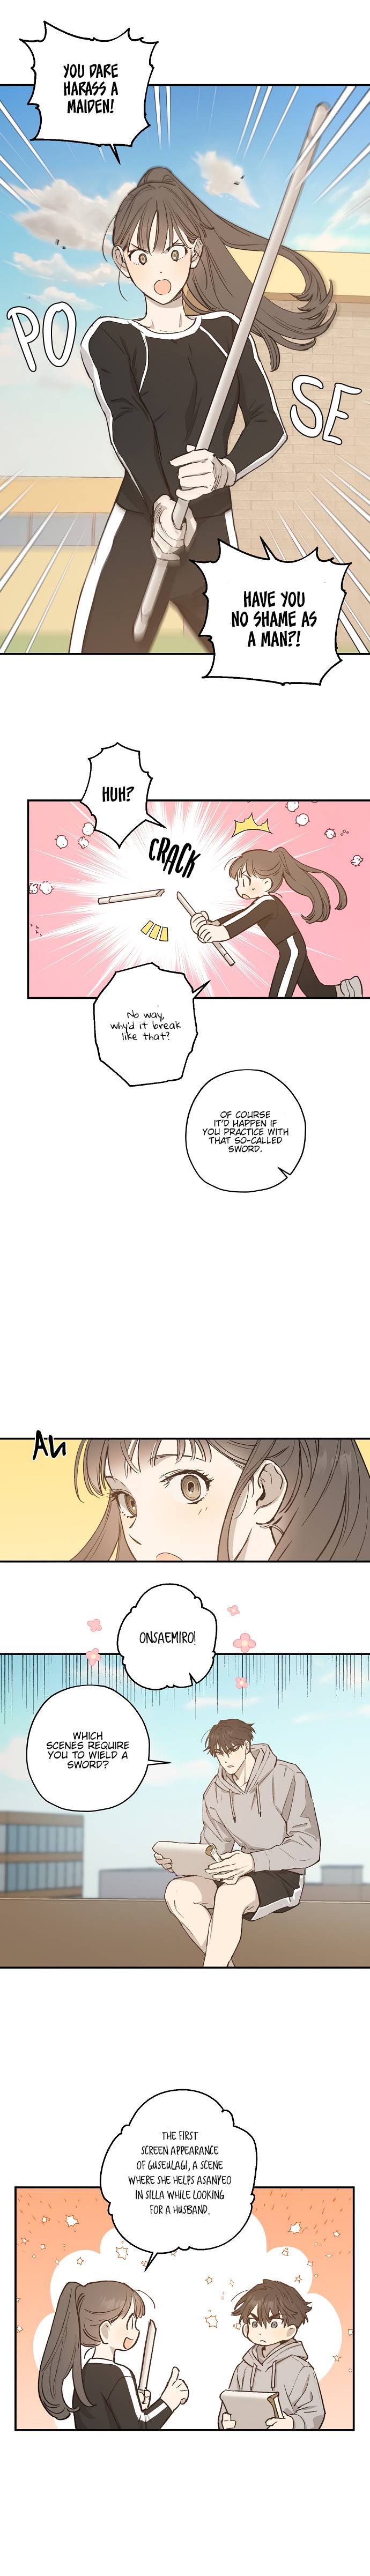 Onsaemiro - Chapter 23 Page 5